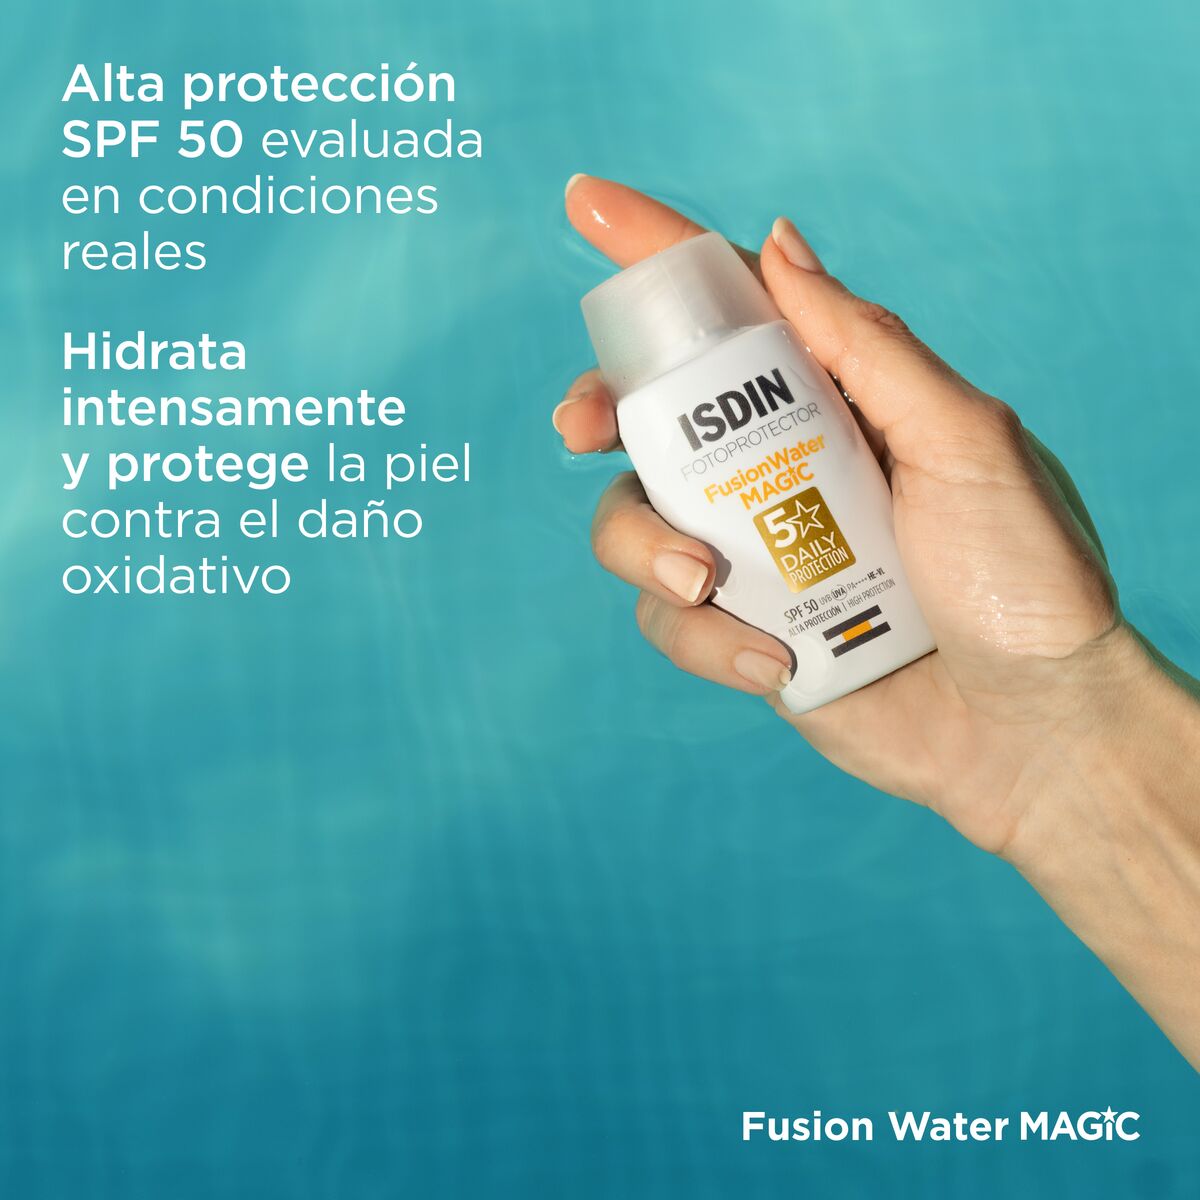 Fusion Water MAGIC SPF 50 - Protección Solar de Alta Eficiencia y Textura Ultraligera